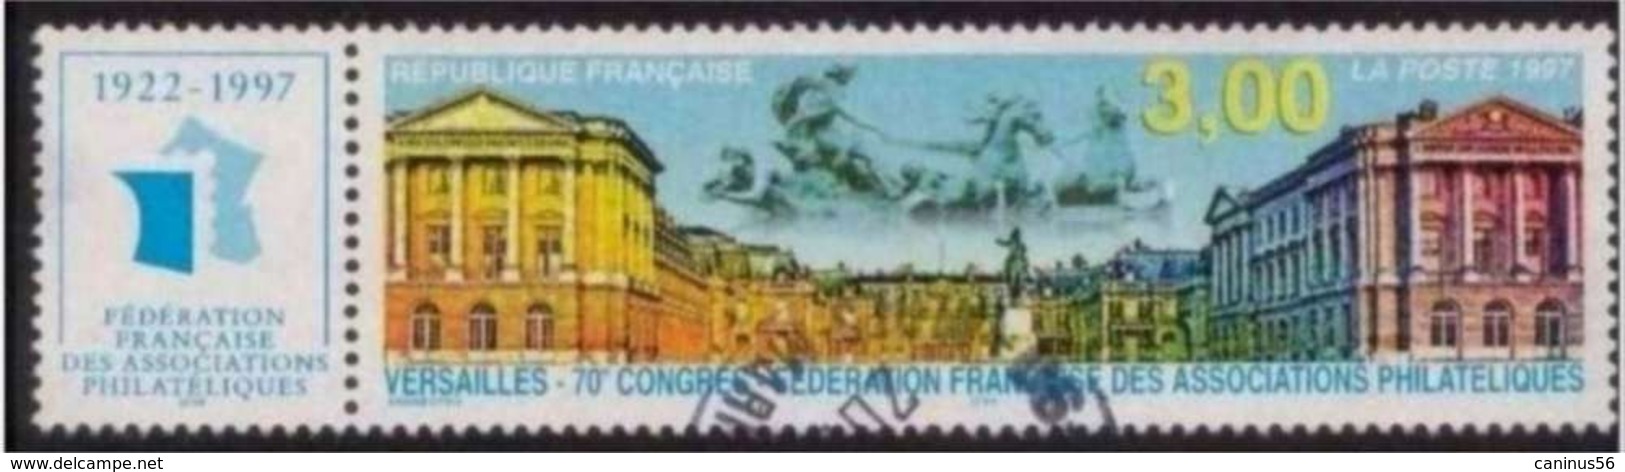 1997 Yt 3073 (o) Versailles Fédération Française Des Associations Philatéliques - Usados